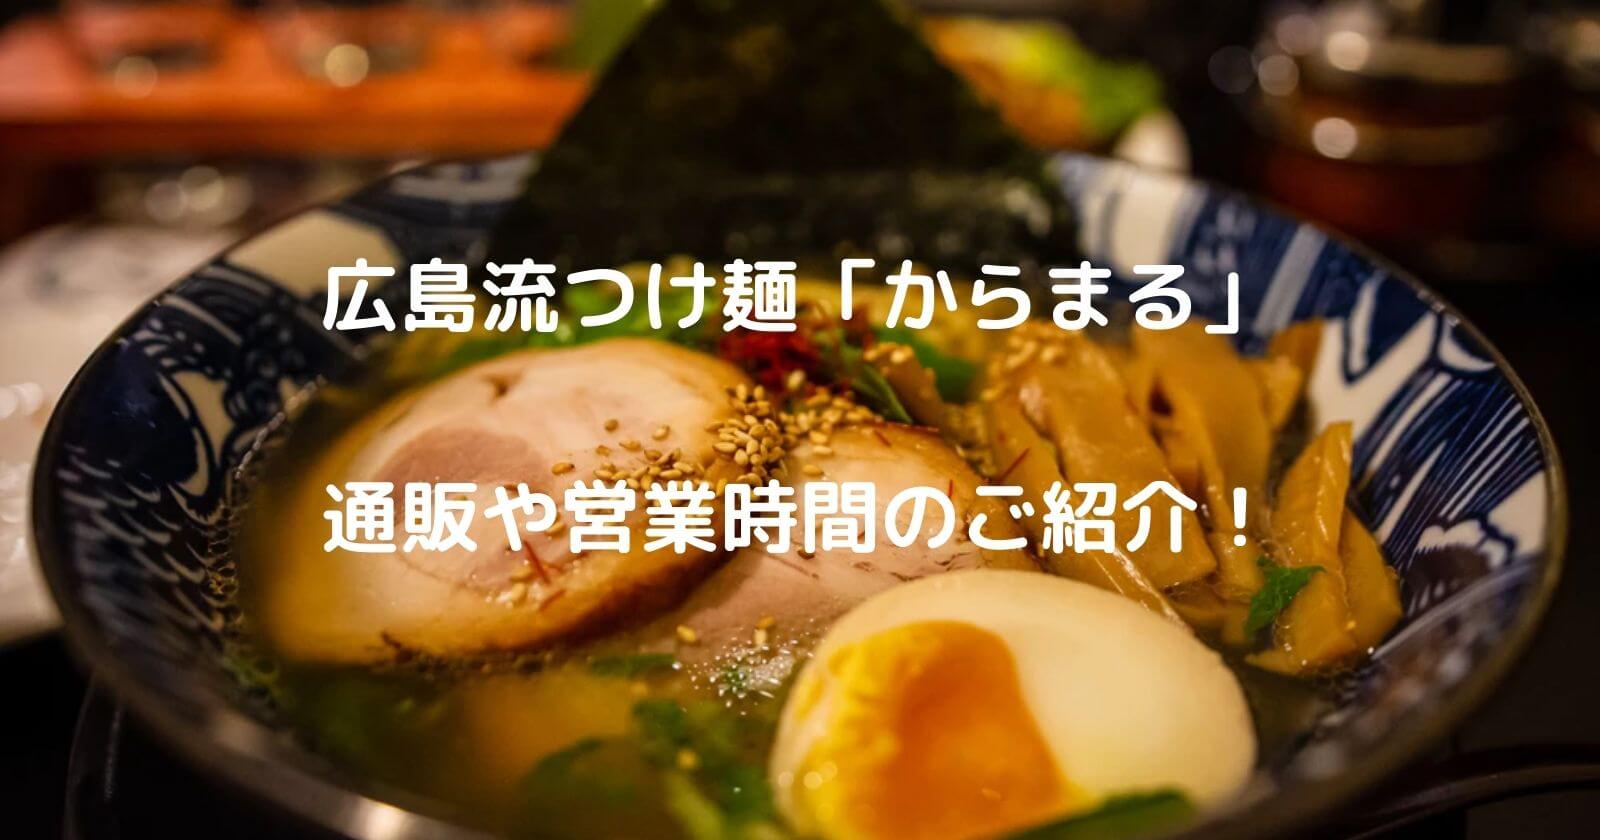 広島流つけ麺「からまる」の通販や営業時間